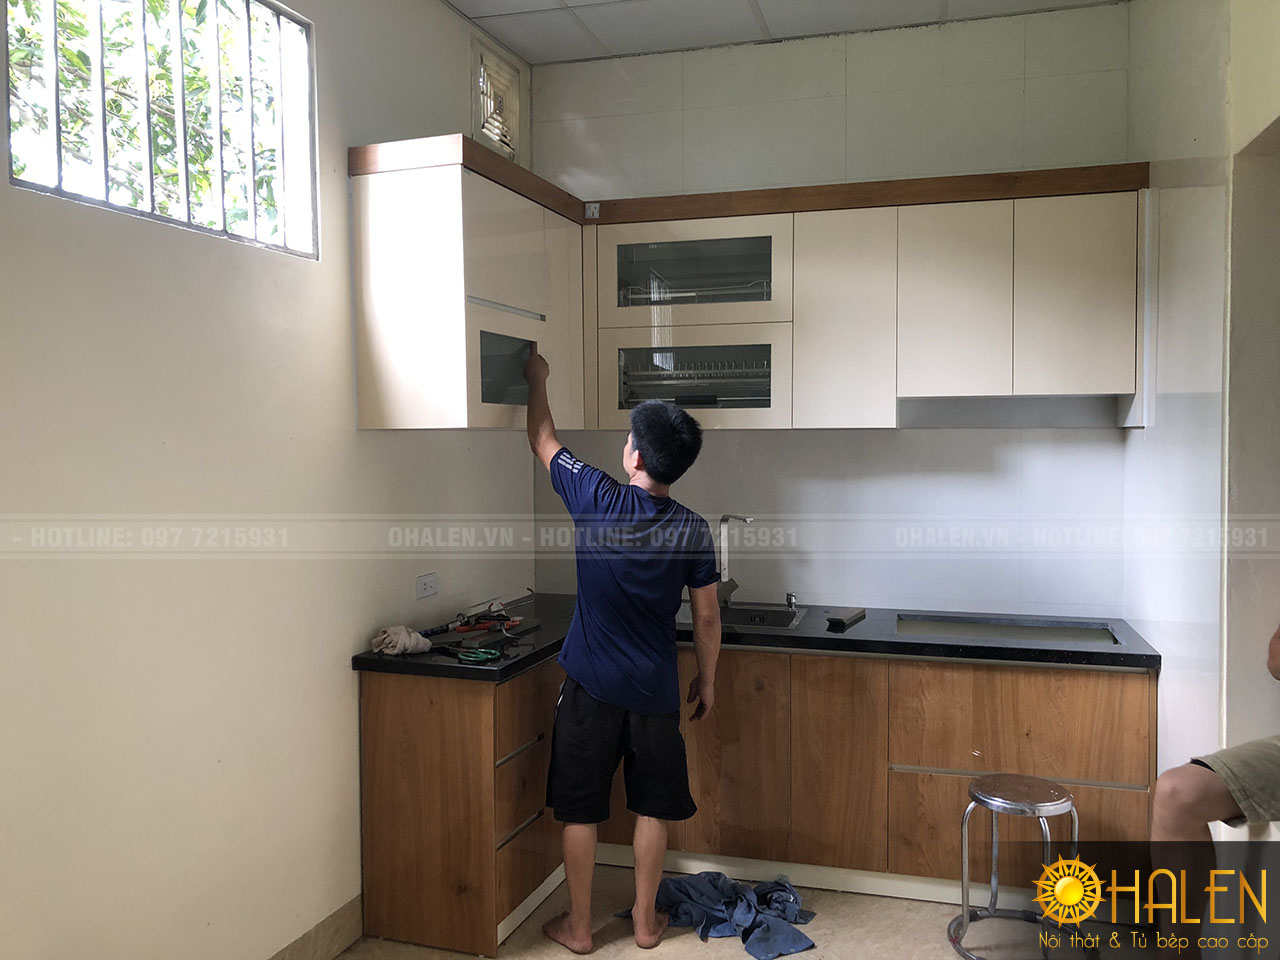 OHALEN thi công đóng tủ bếp tại Sơn Tây, Hà nội